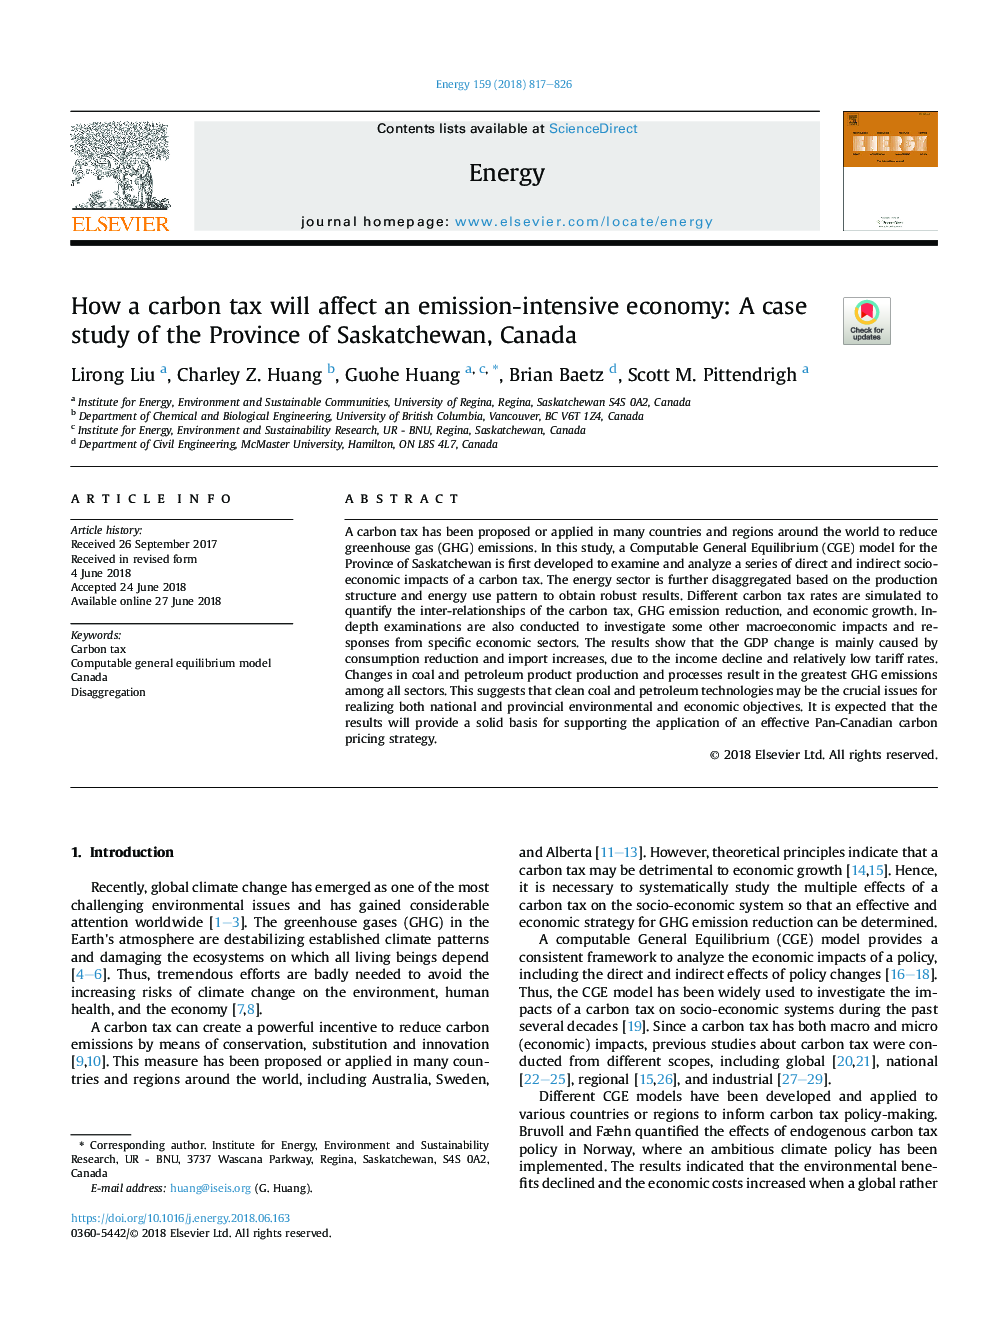 چگونه یک مالیات بر کربن بر اقتصاد تاثیرگذار بر انتشار تاثیر می گذارد: مطالعه موردی استان ساسکاچوان، کانادا 